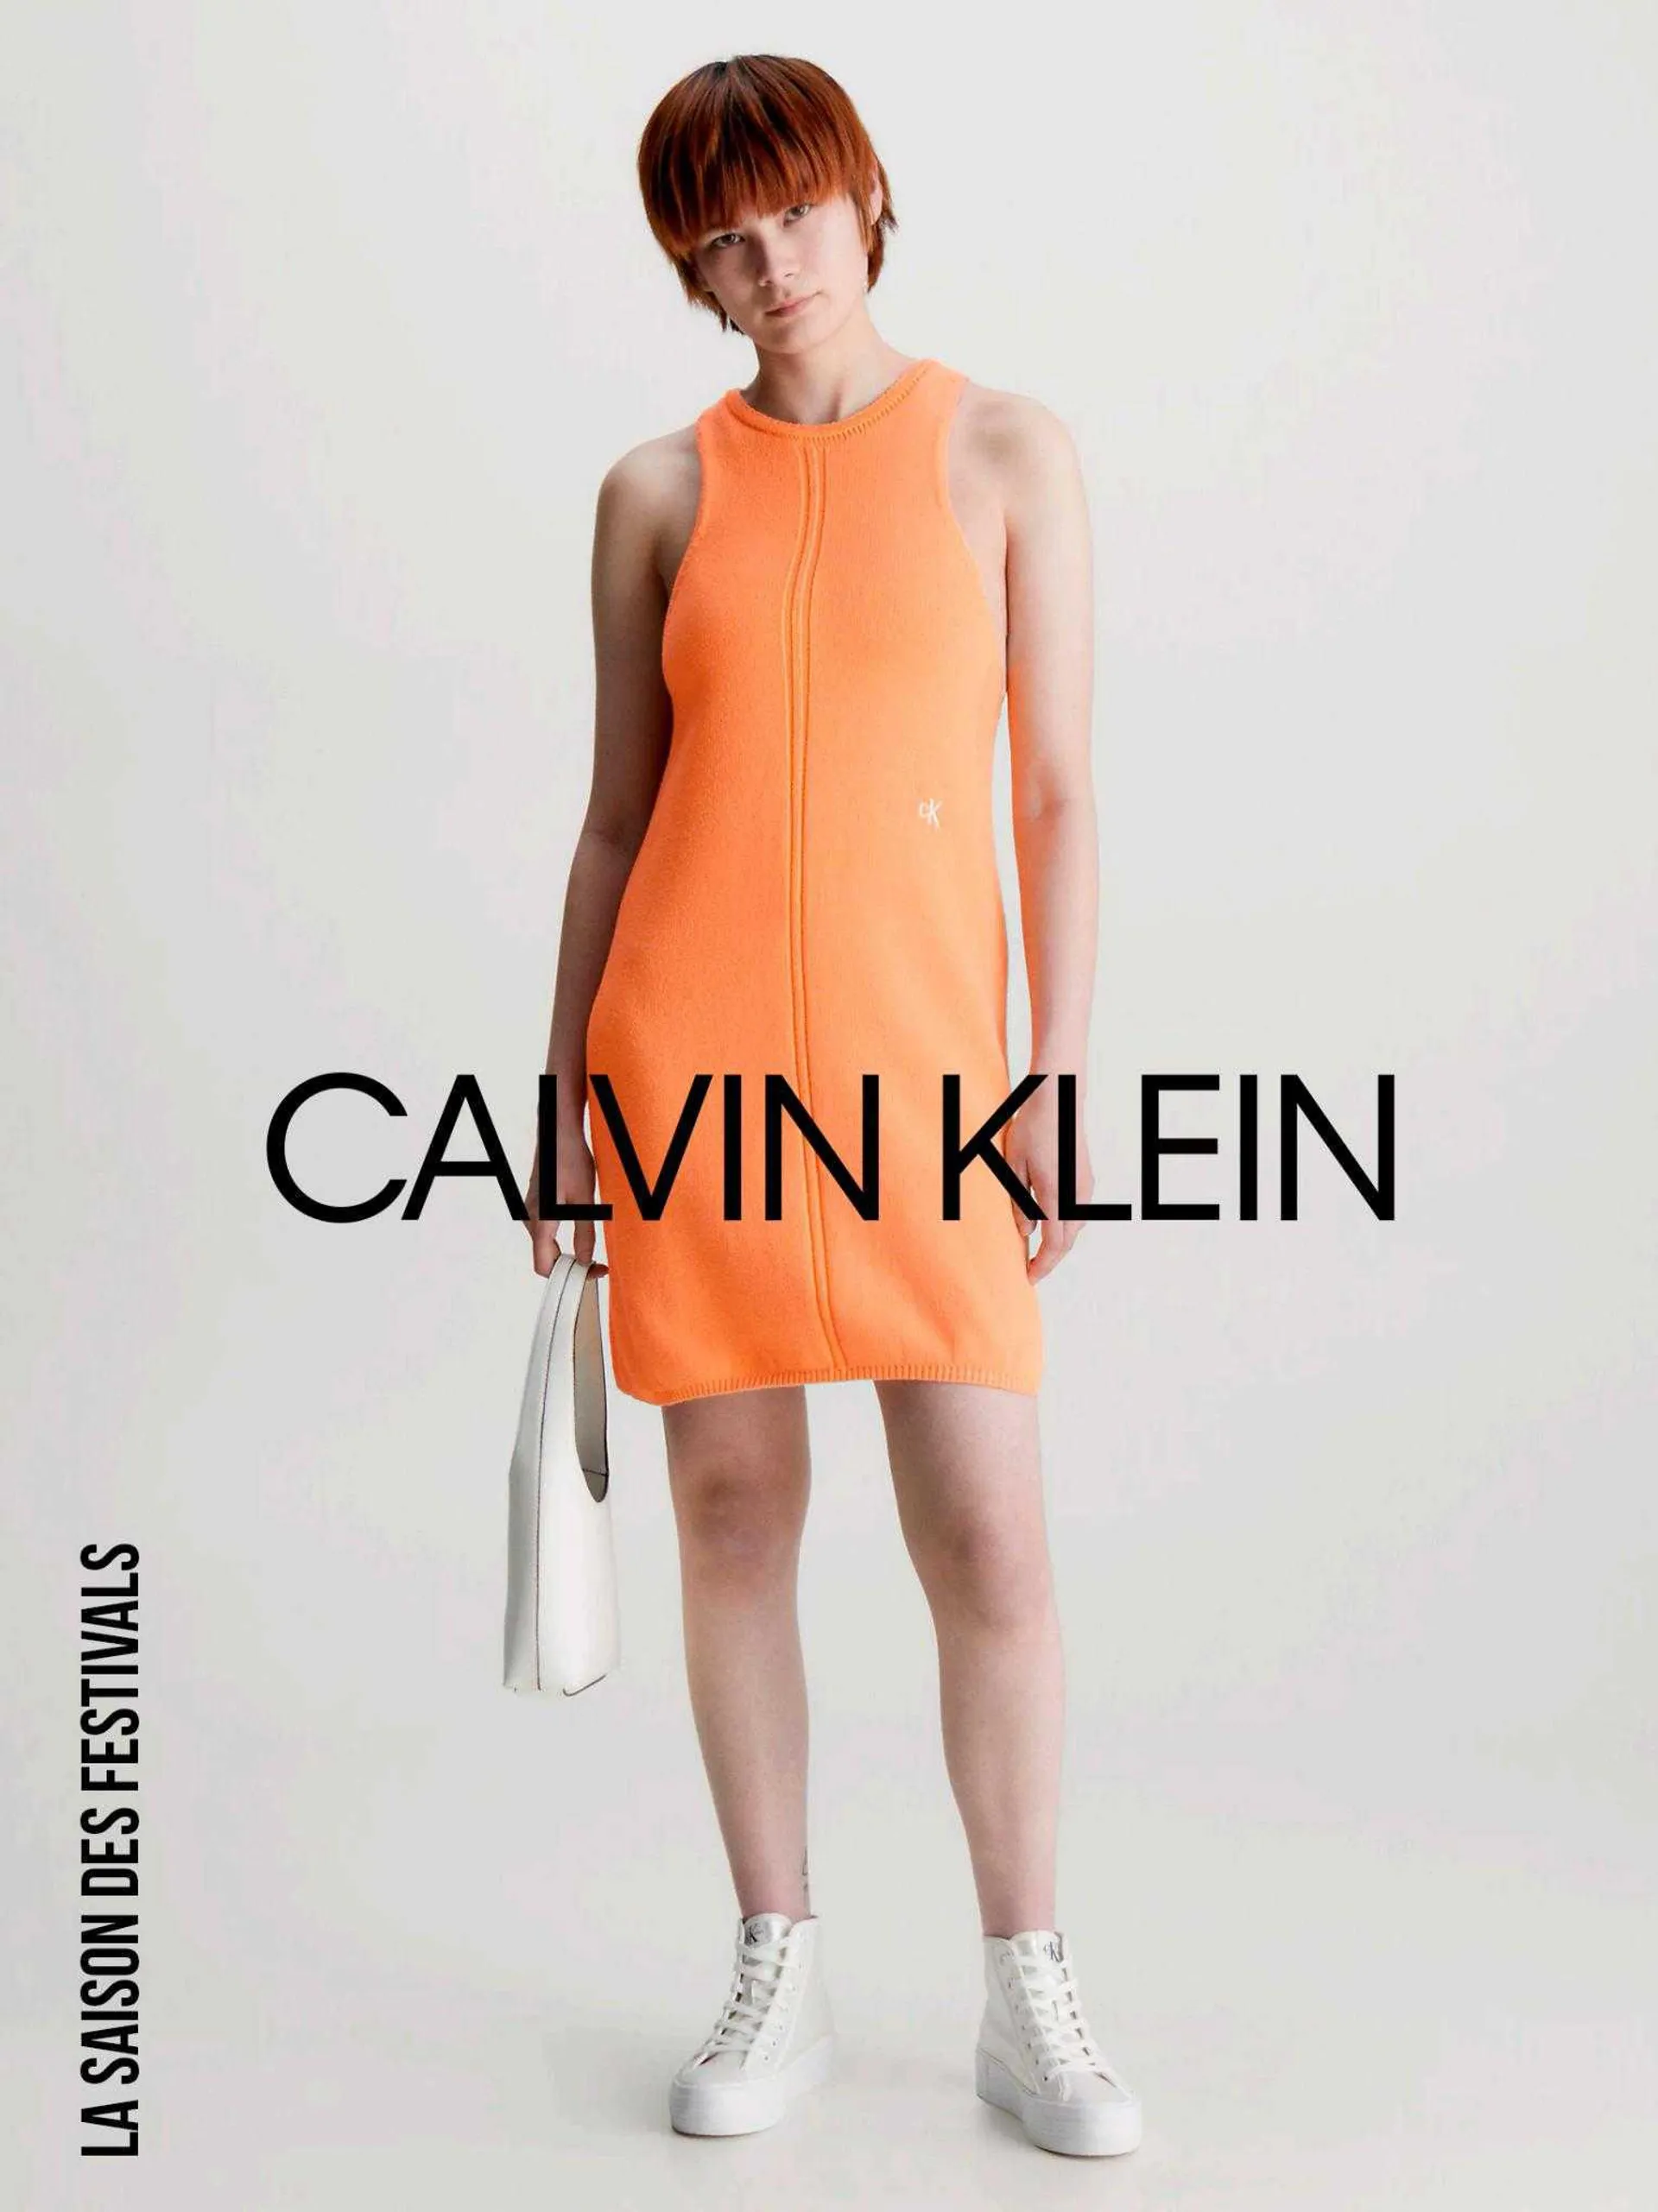 Catalogue Calvin Klein